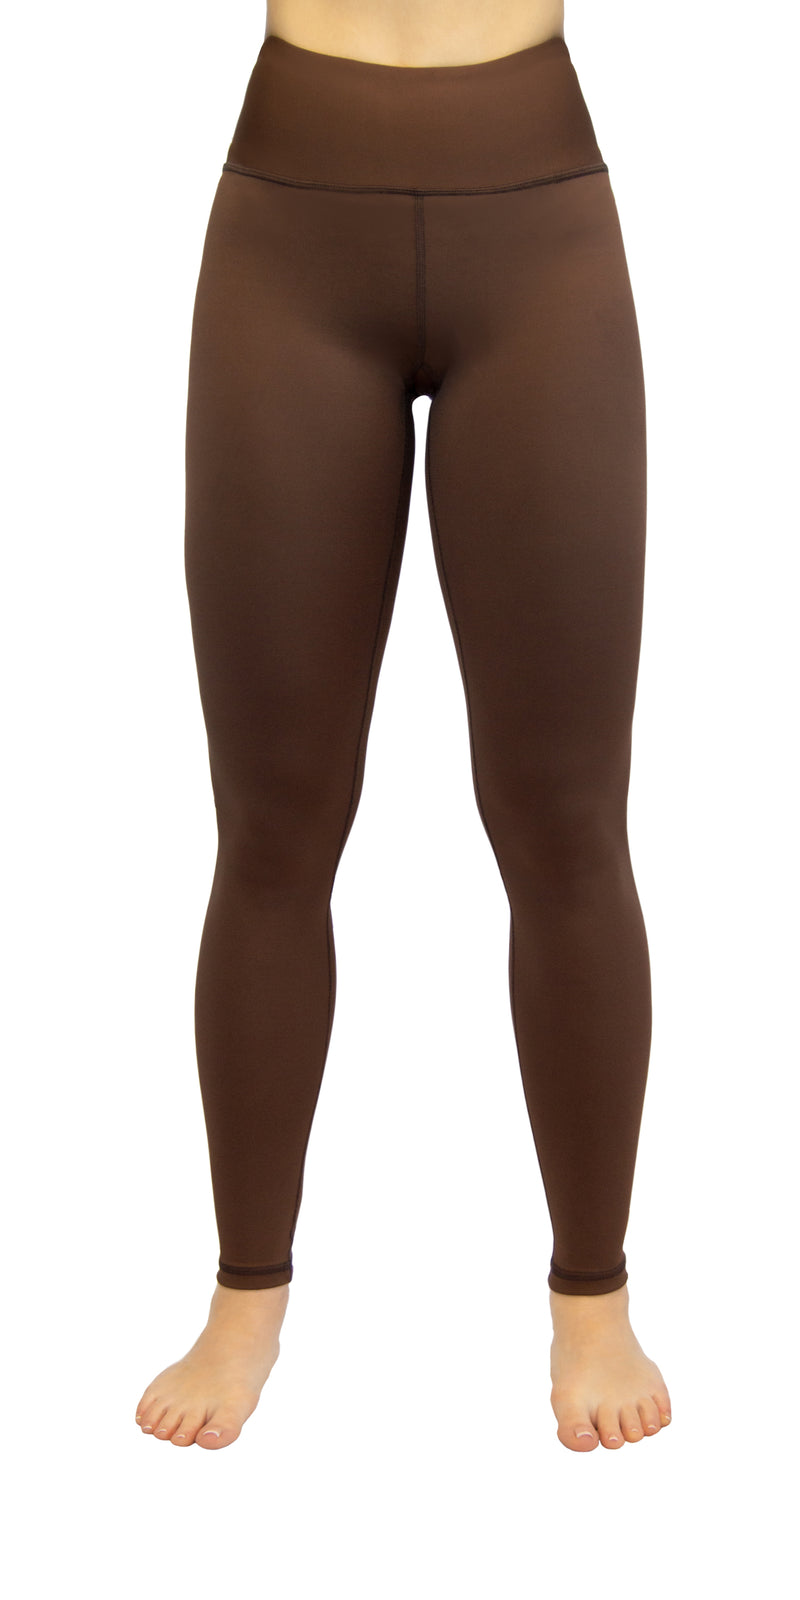 Sale Leggings Sports Yoga Pants Digital 3D Printed Panda Hot in Trends |  eBay